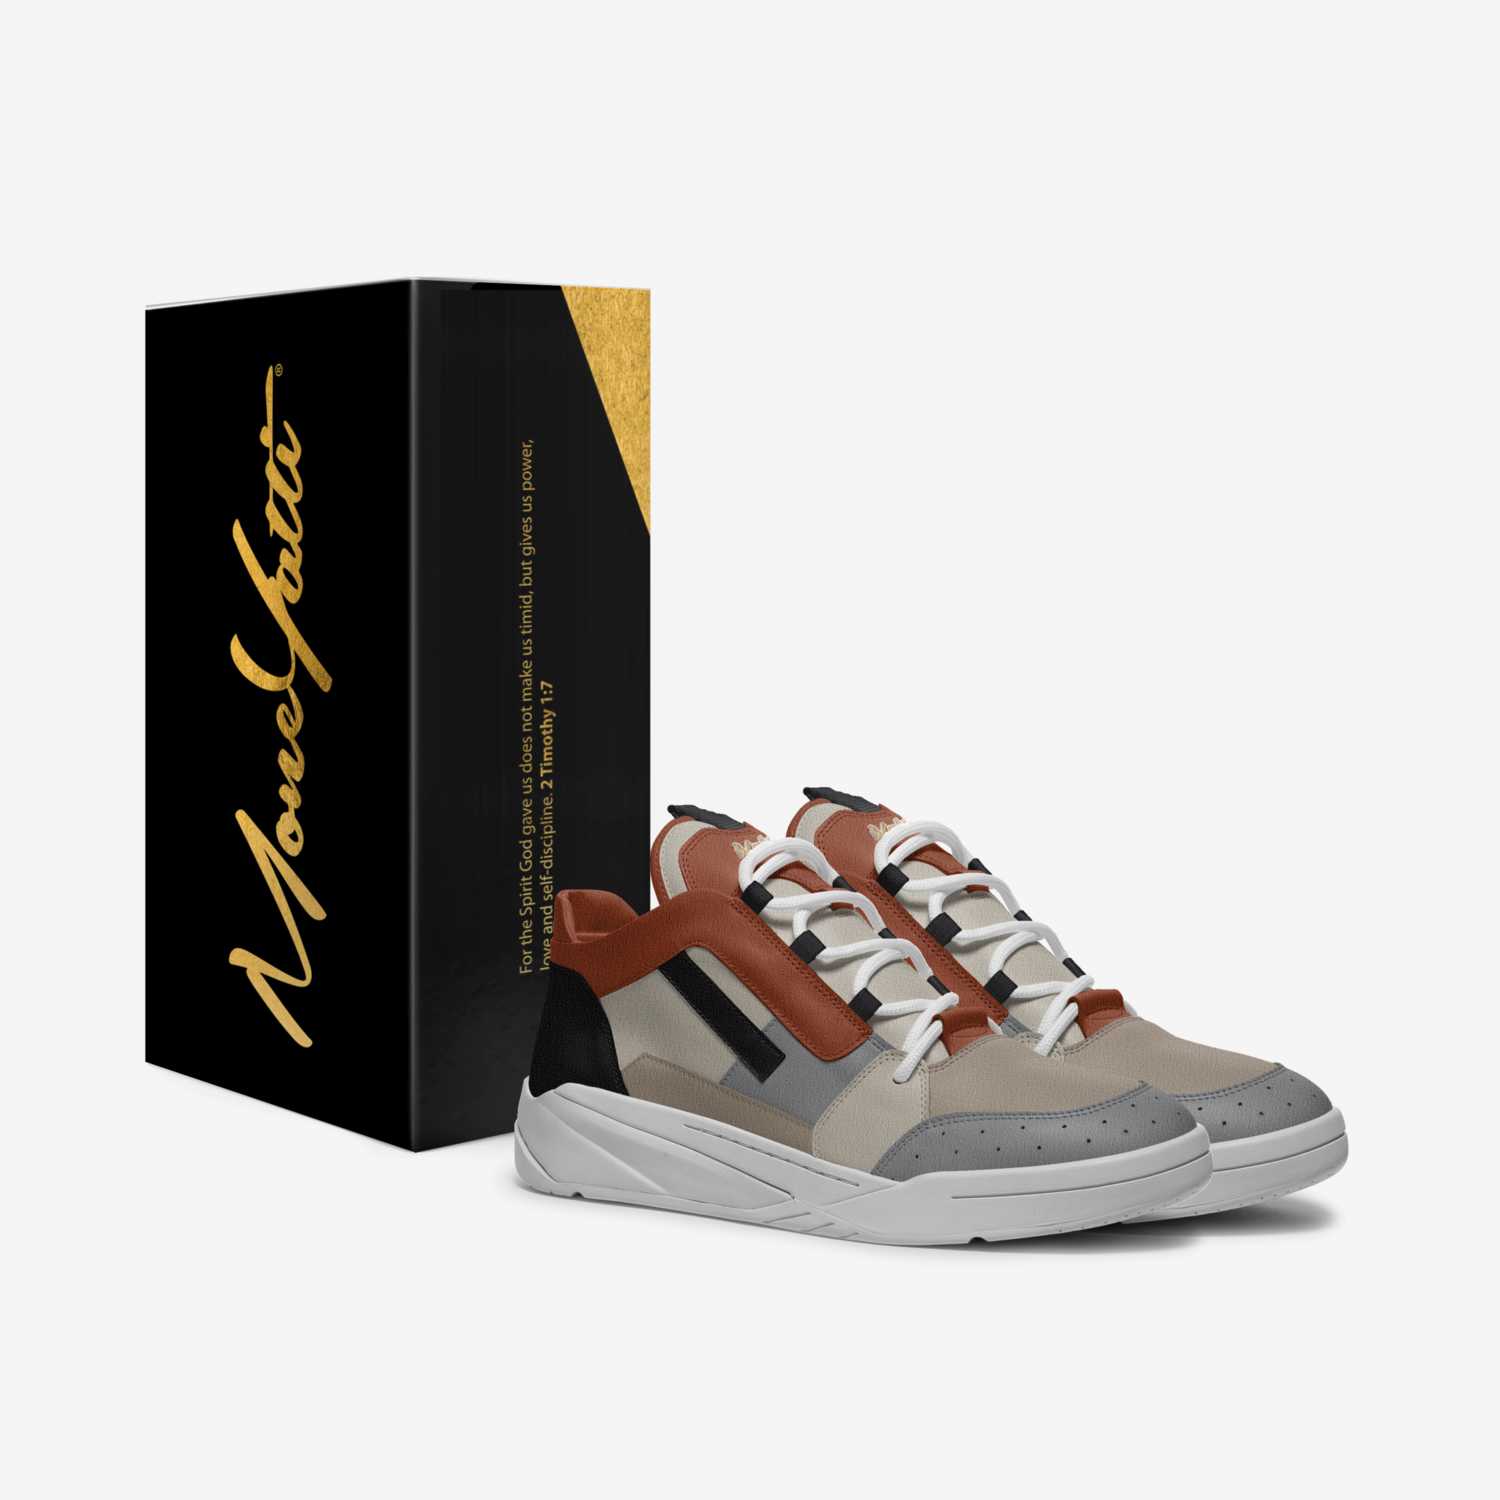 MONEYATTI TURBO 013 custom made in Italy shoes by Moneyatti Brand | Box view